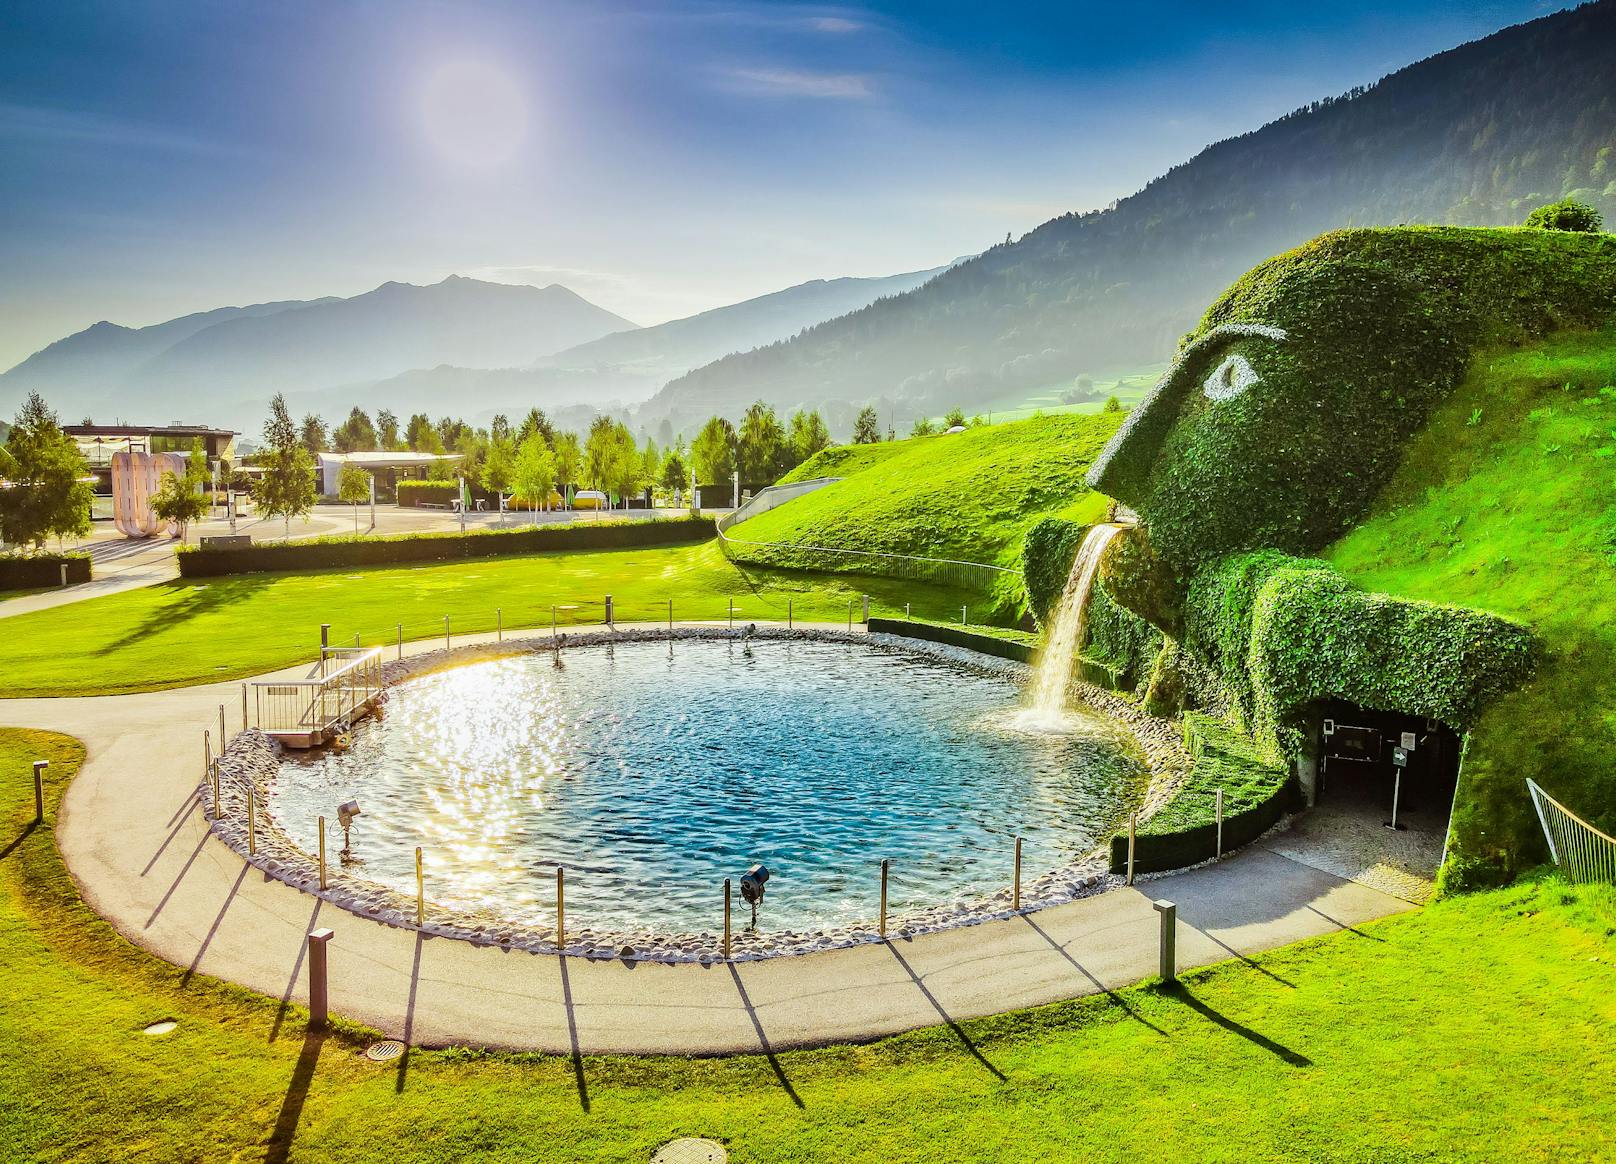 Die Swarovski Kristallwelten in Wattens, Tirol sind ein Ort zum Staunen.